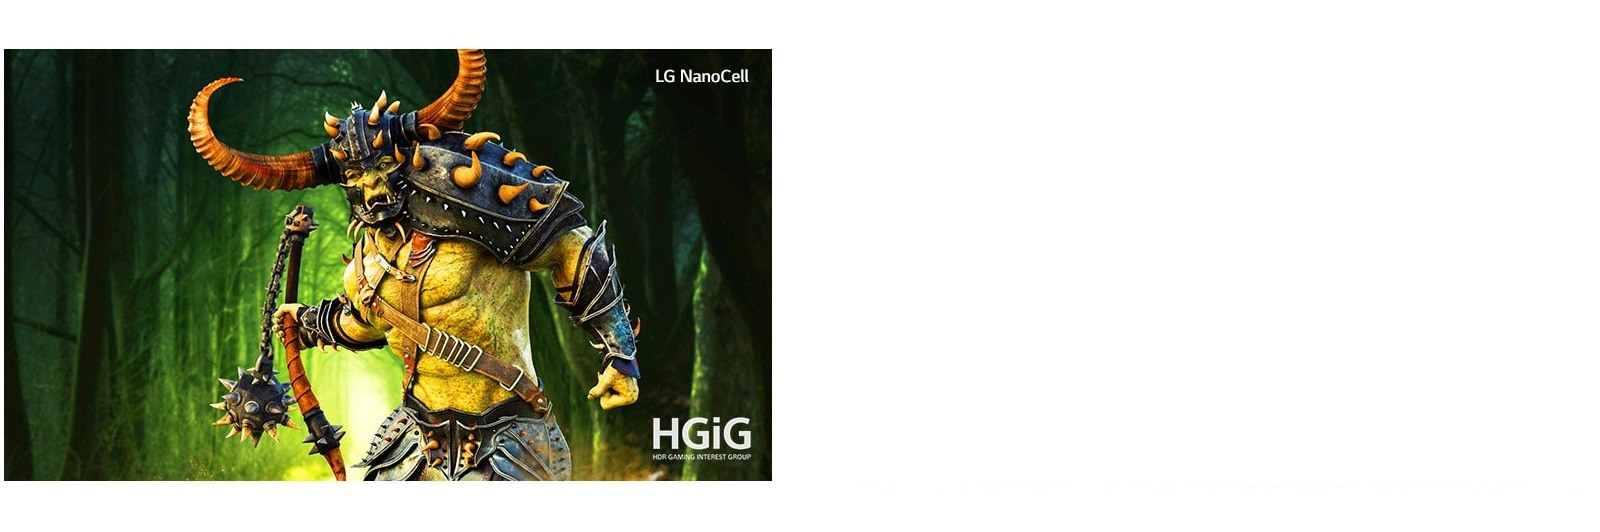 HGiG1